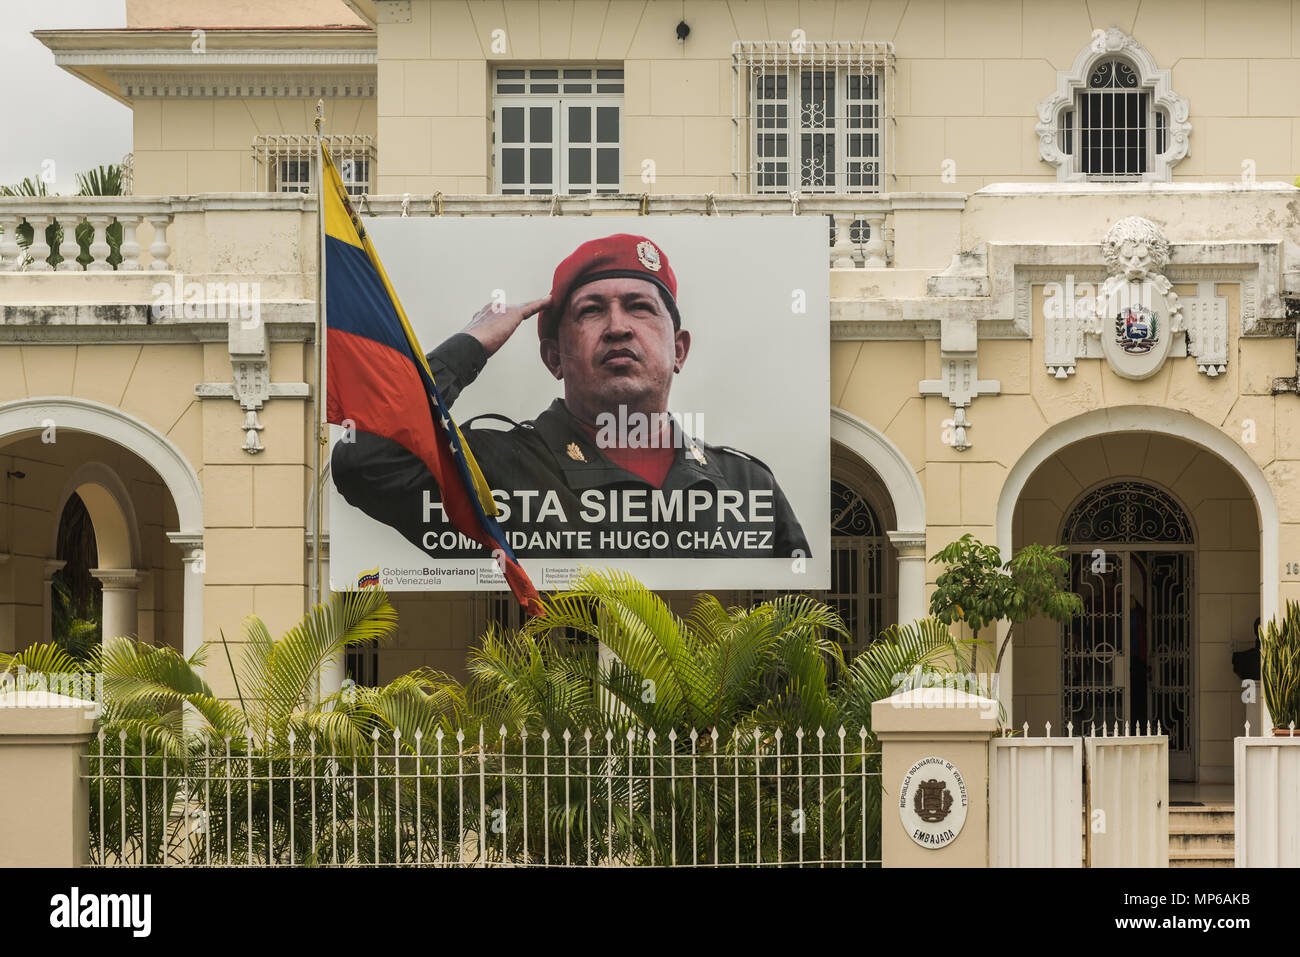 Havanna, Kuba. 5. Mai 2018 die Botschaft von Venezuela in Havanna, Kuba mit einem großen Plakat commemariting ehemaliger Präsident von Venezuela Hugo Chavez. Caleb Hughes/Alamy leben Nachrichten Stockfoto